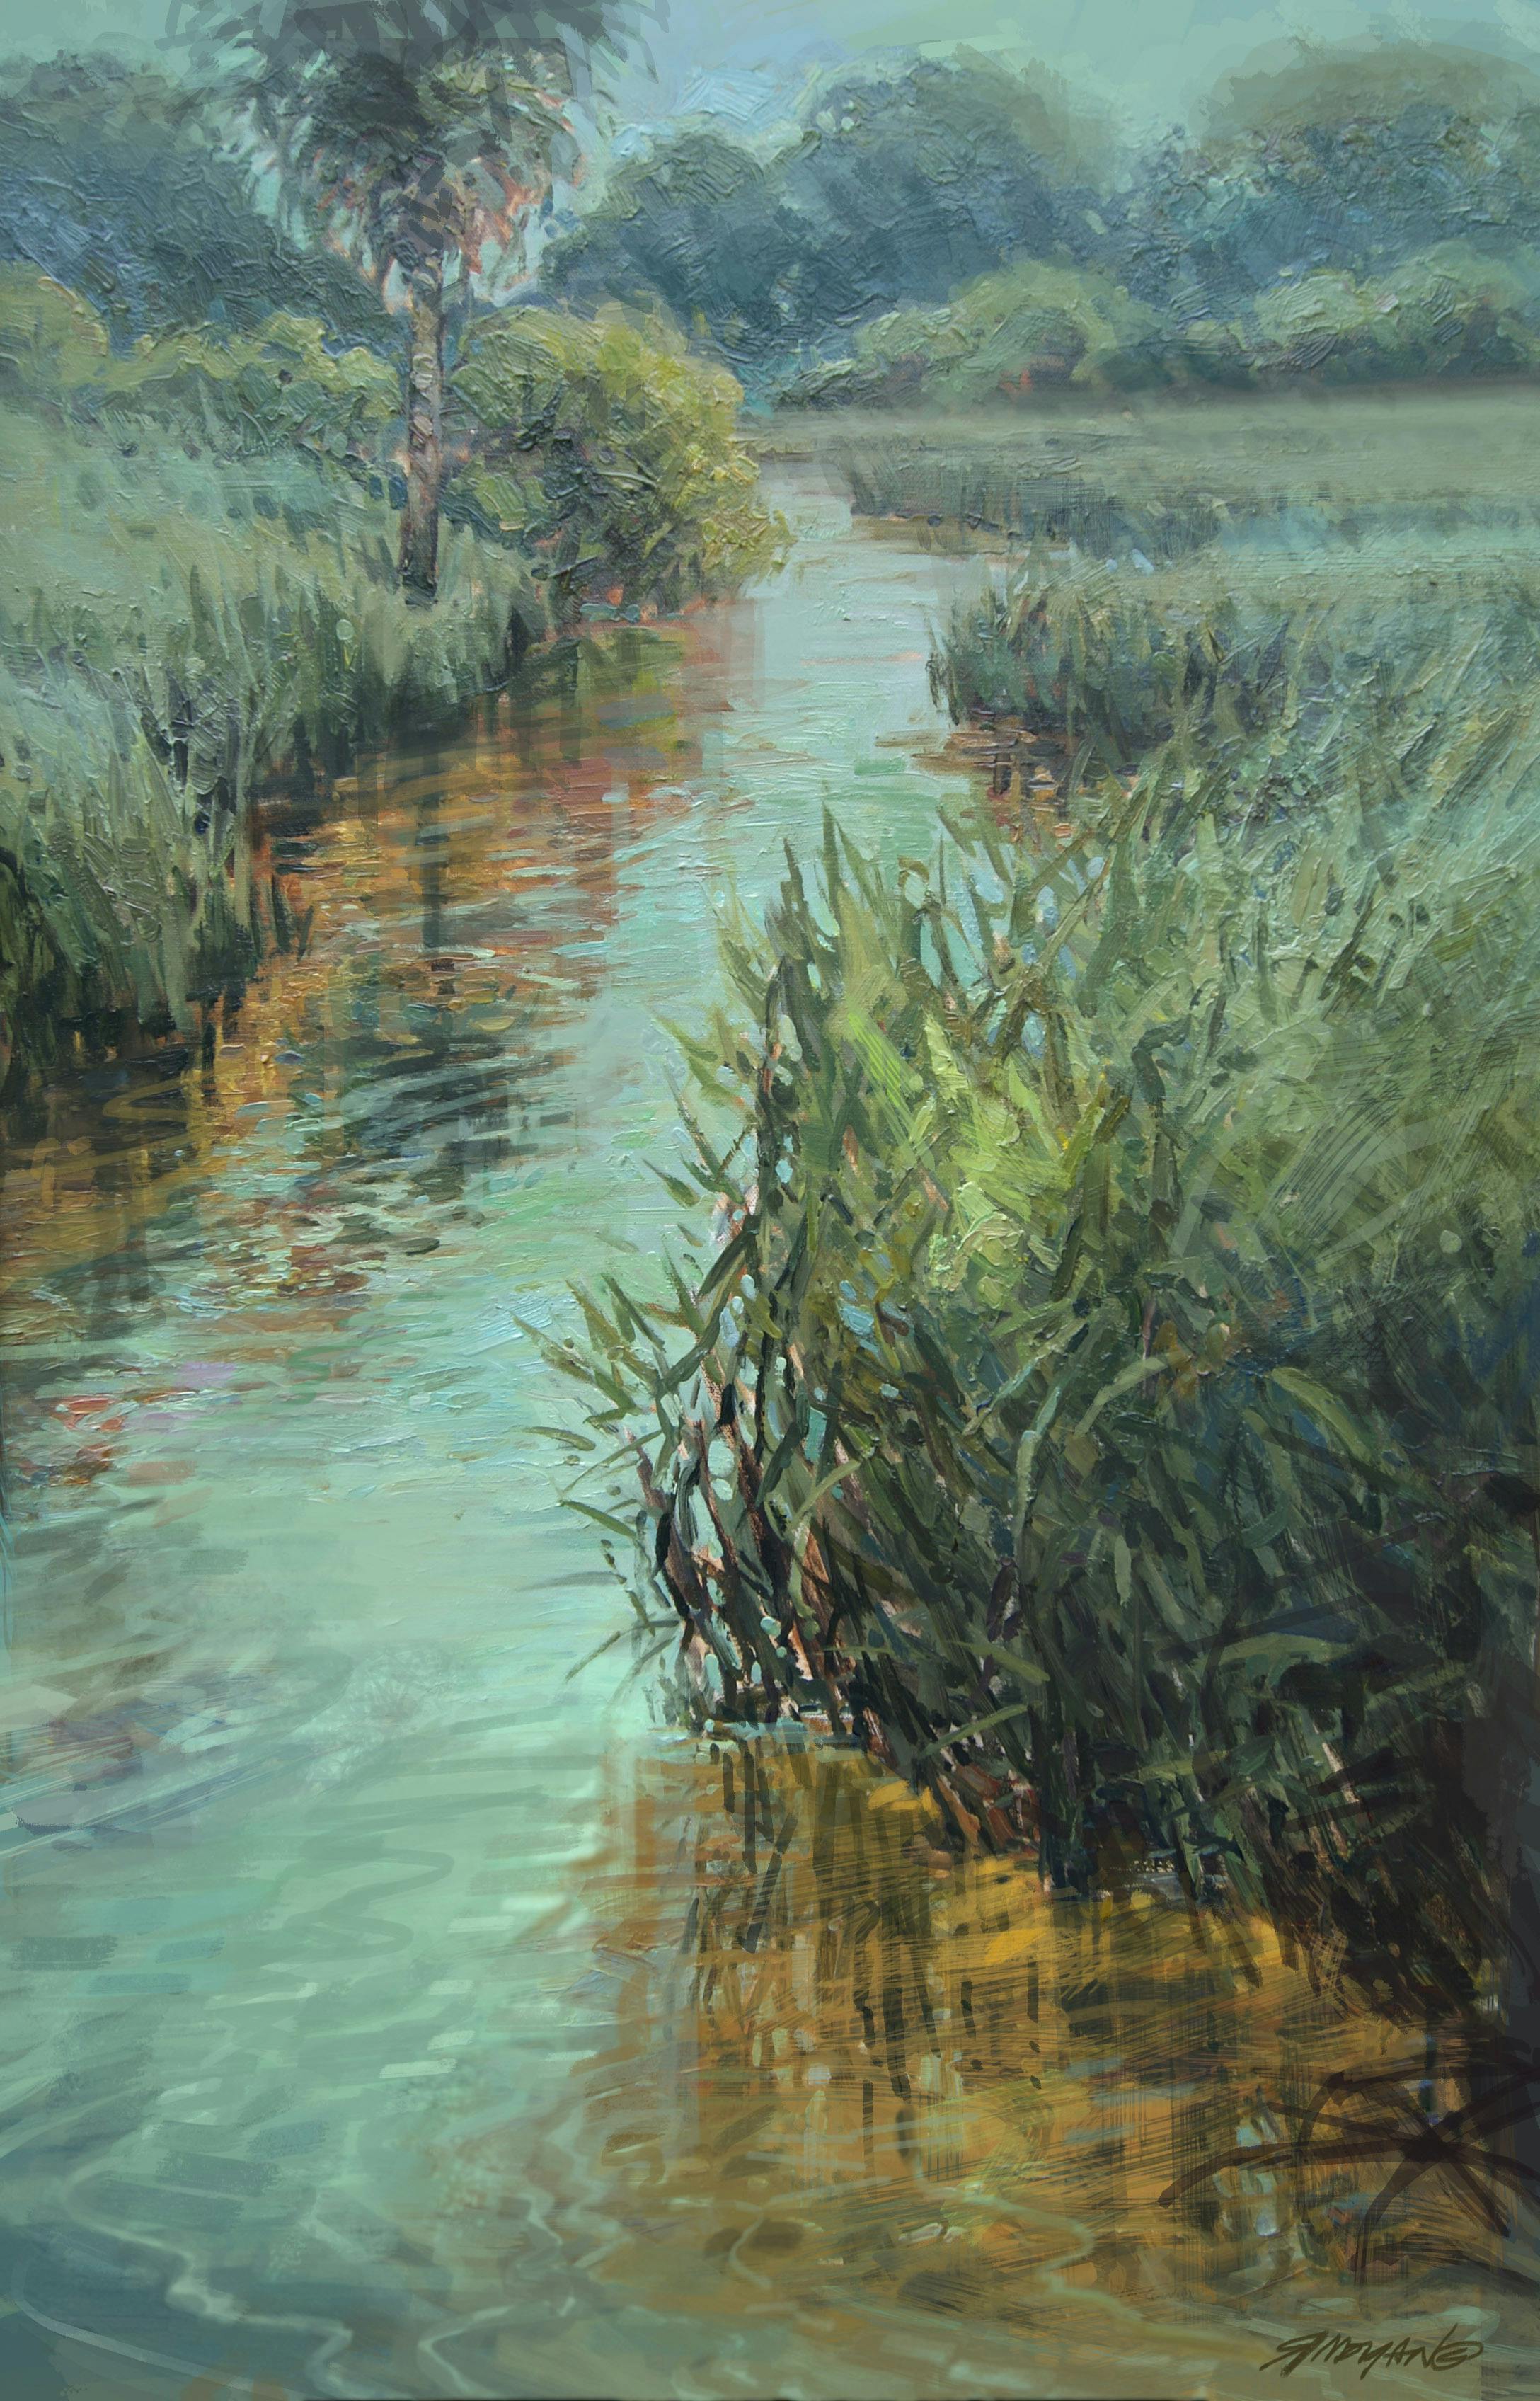 A landscape painting